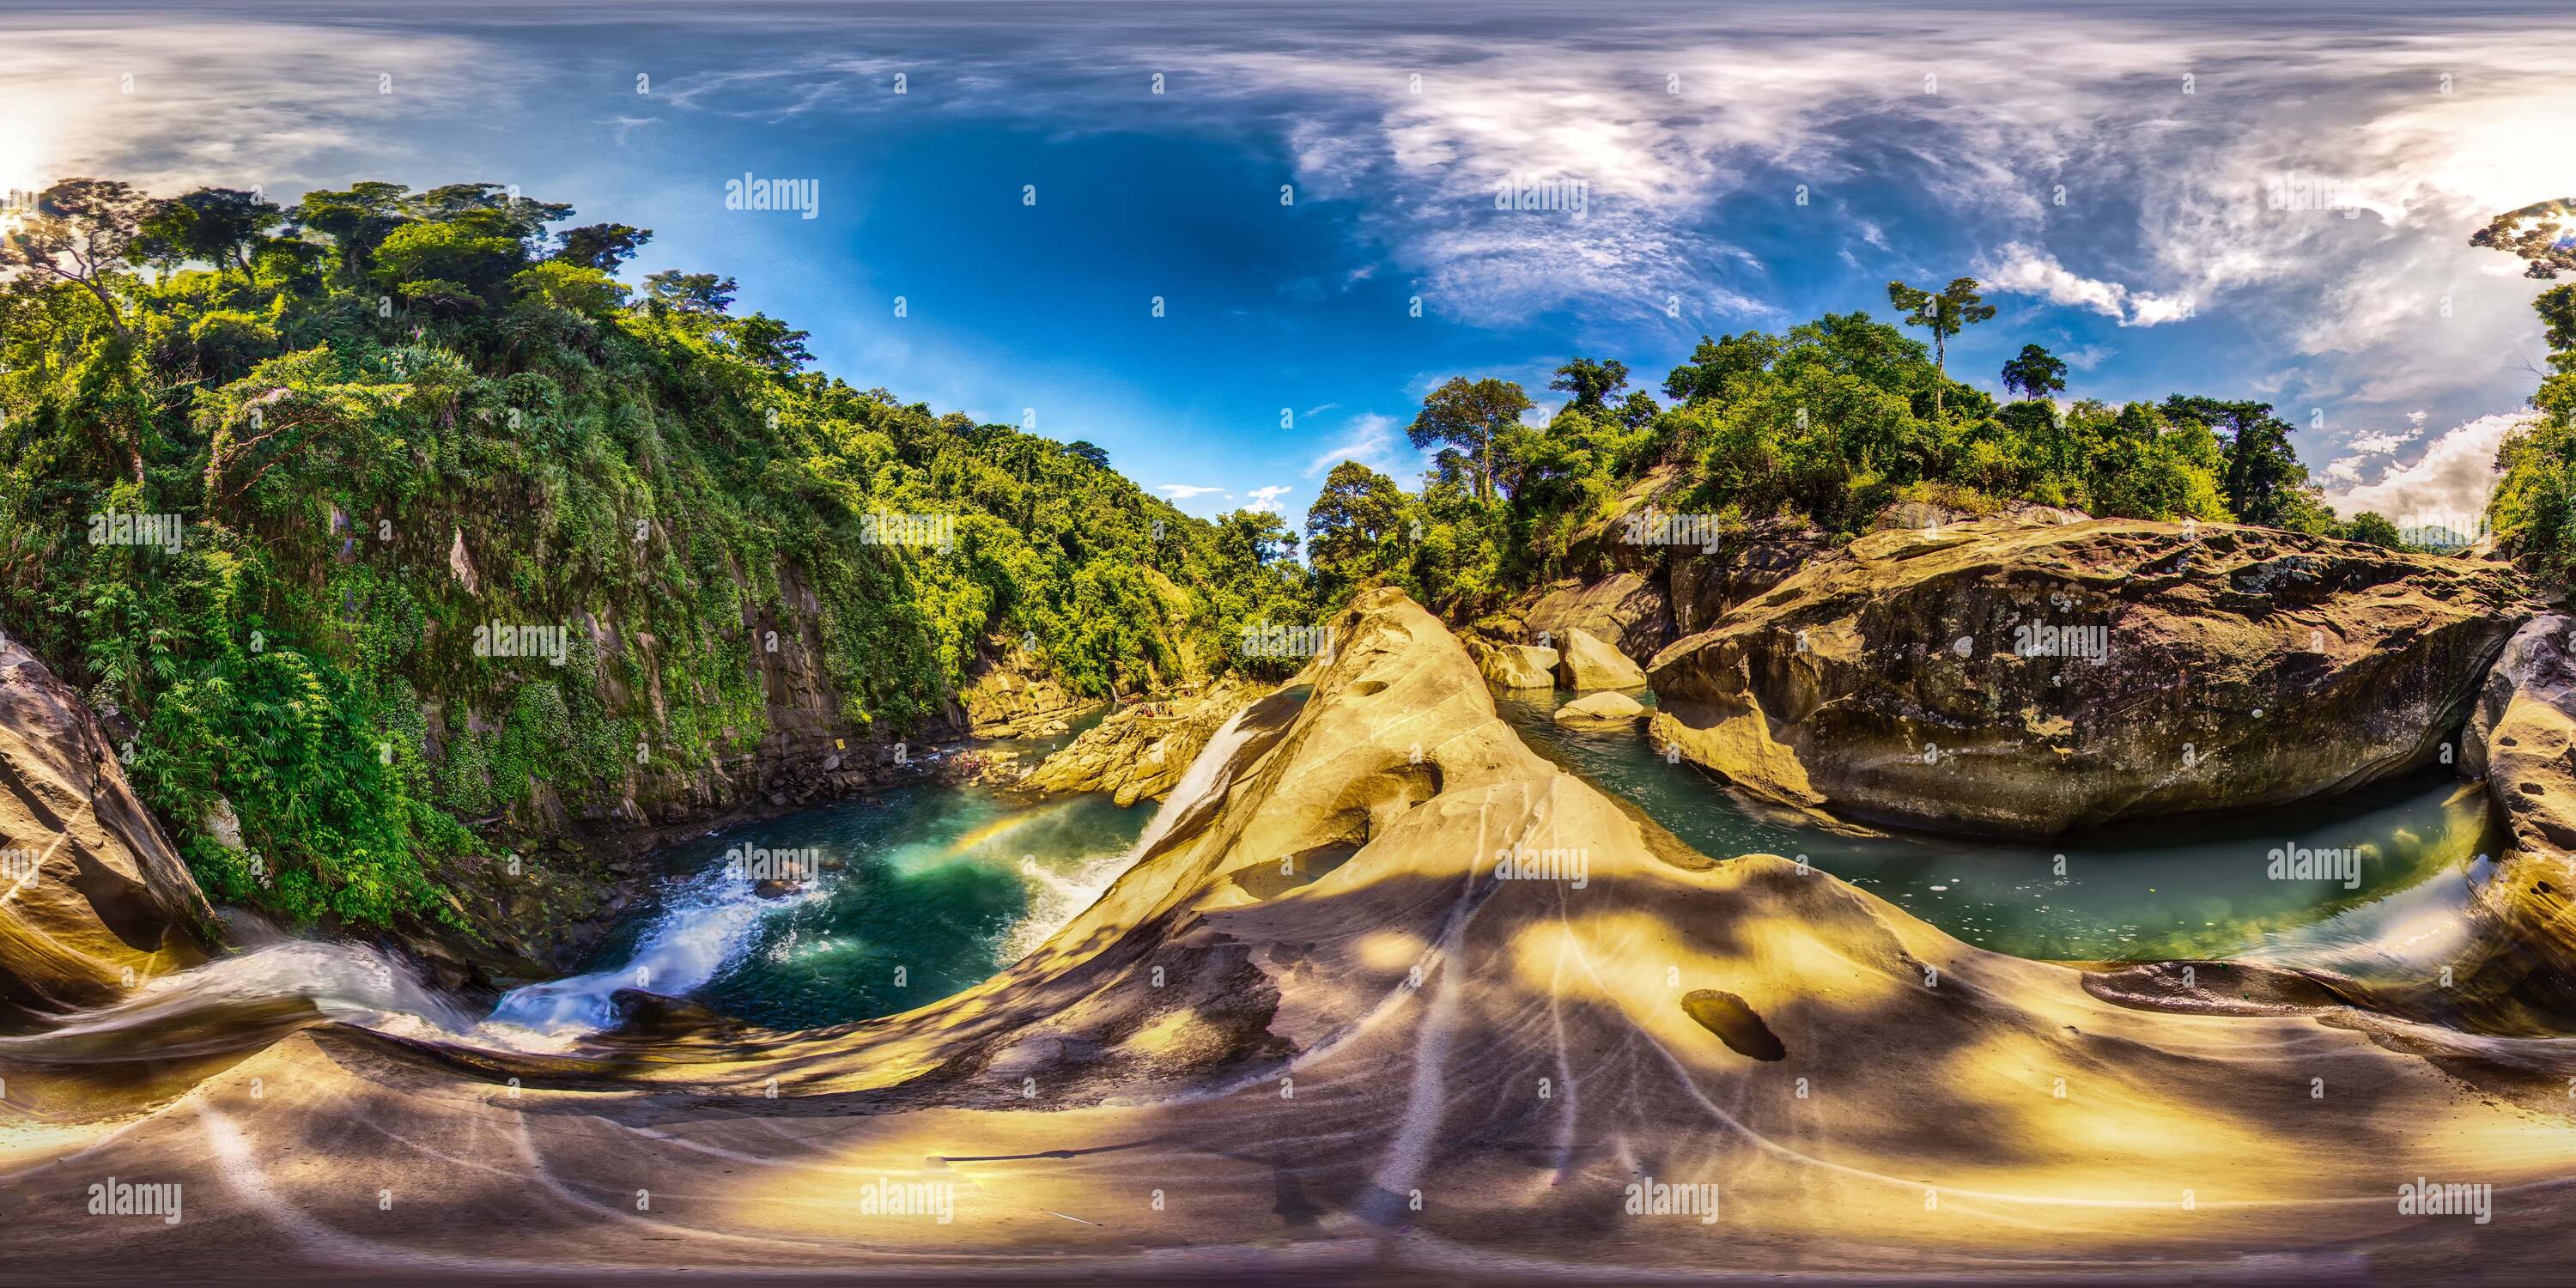 Vue panoramique à 360° de Tangandan Chutes d'eau